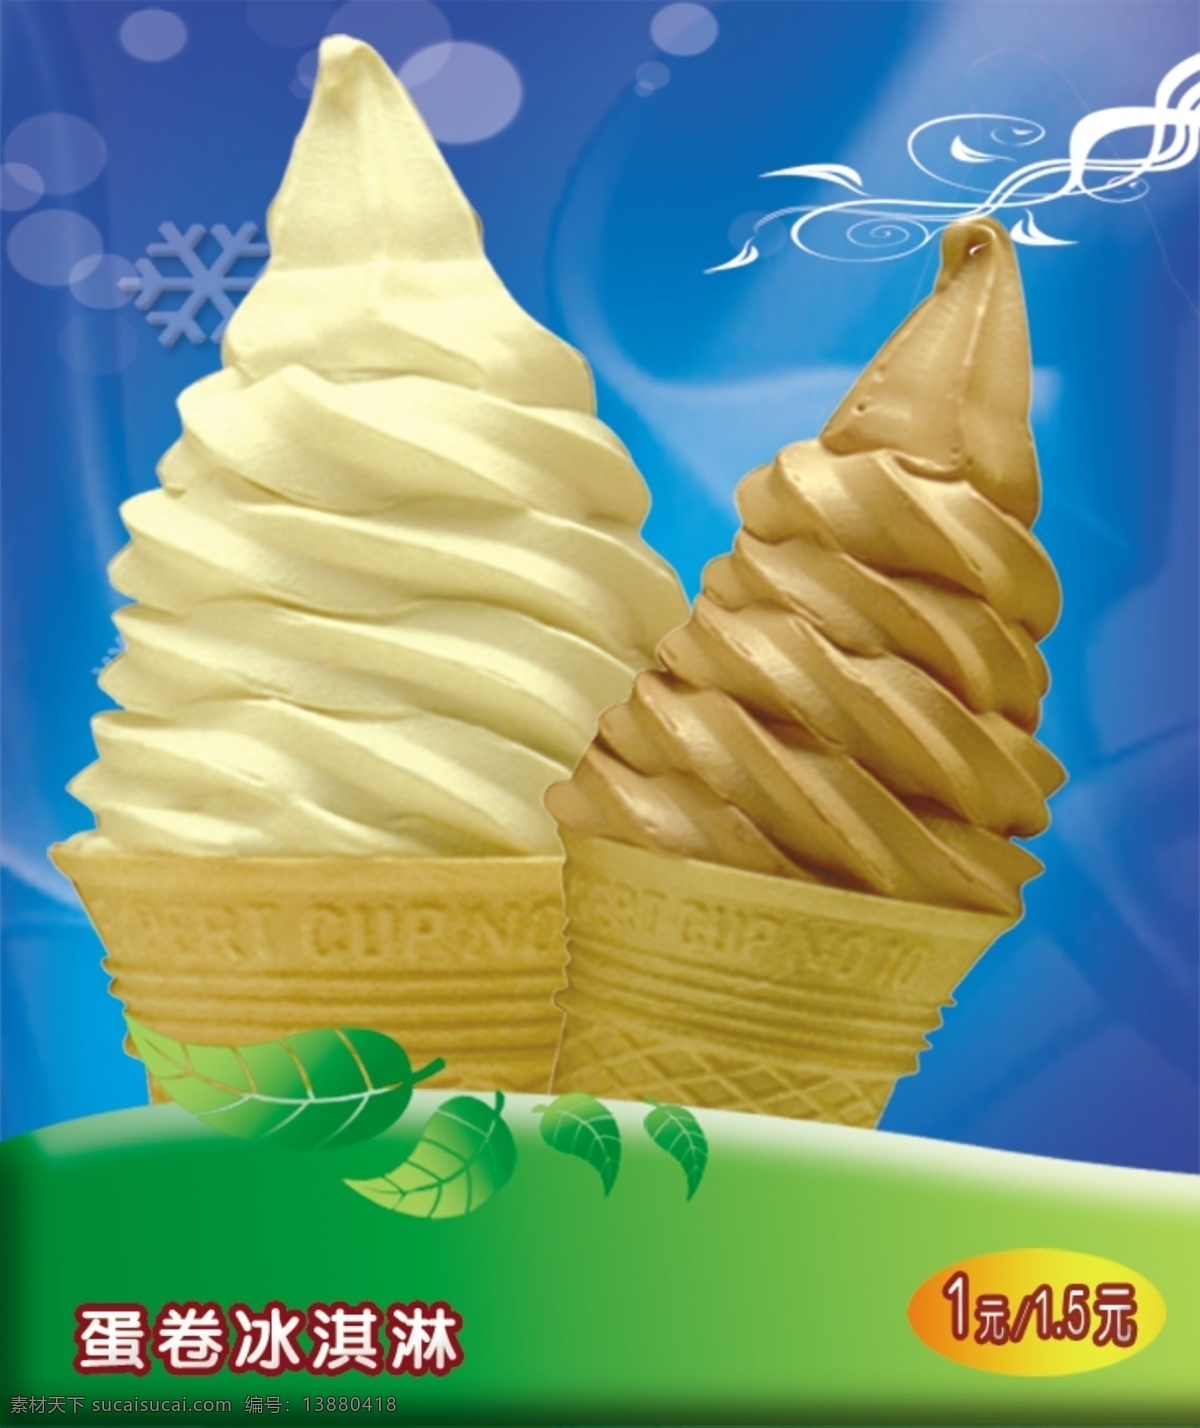 冰淇淋 蓝色背景 花边 绿叶 蛋卷冰淇淋 分层 源文件